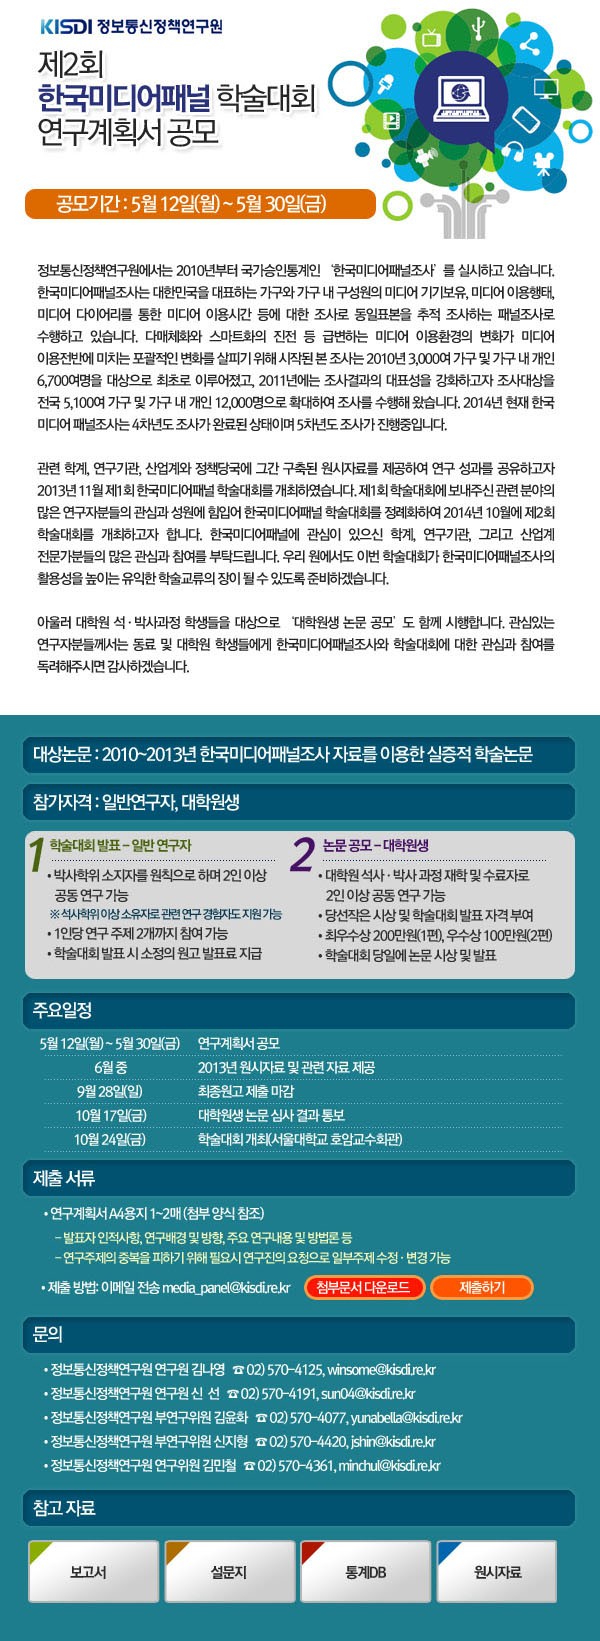 한국미디어패널 학술대회 연구계획서 공모.jpg